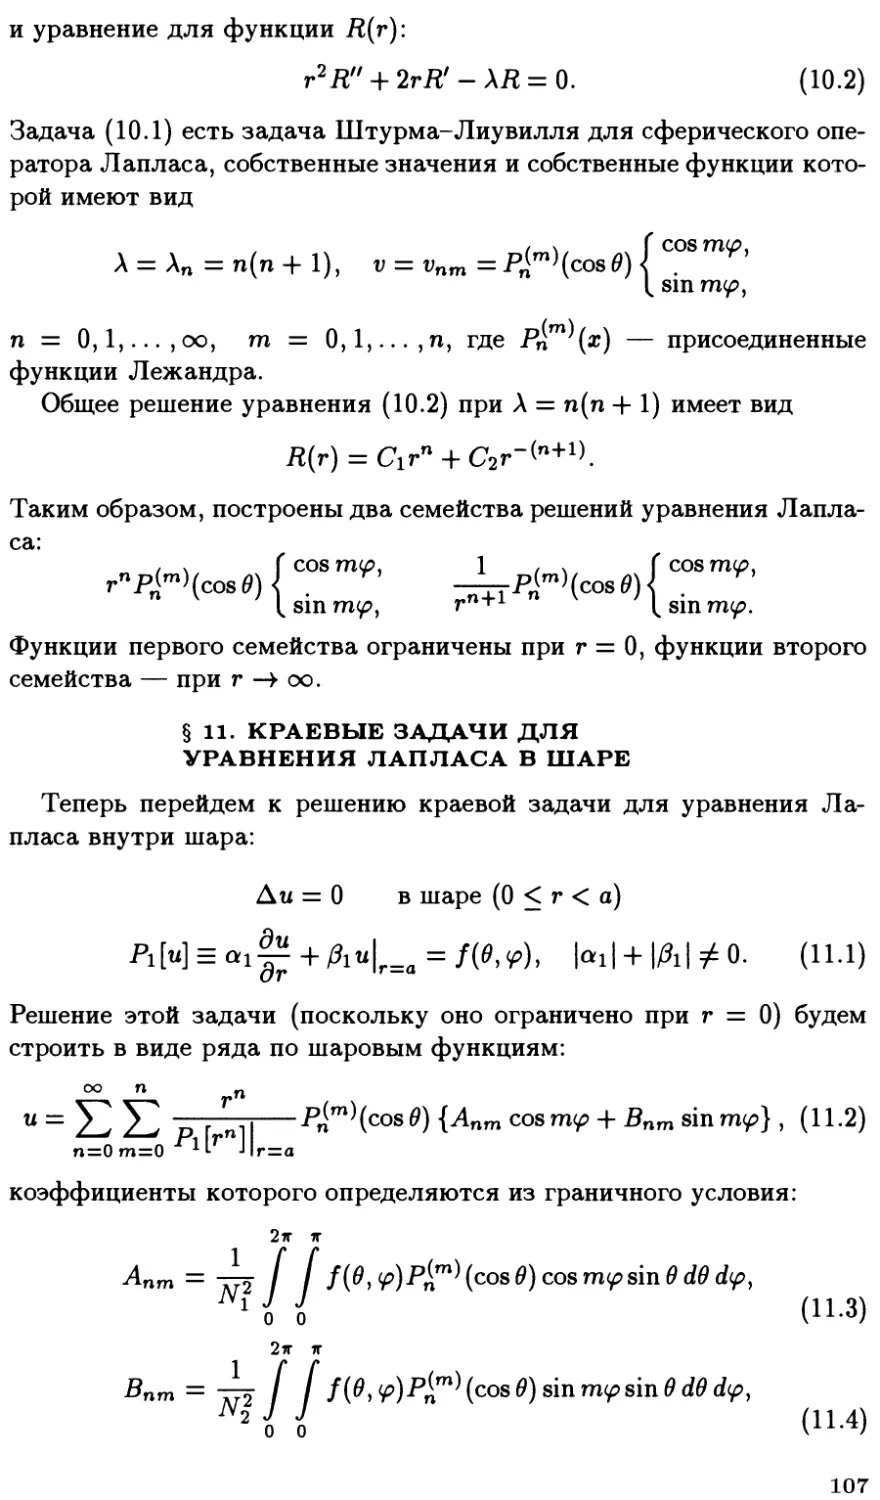 §11. Краевые задачи для уравнения Лапласа в шаре